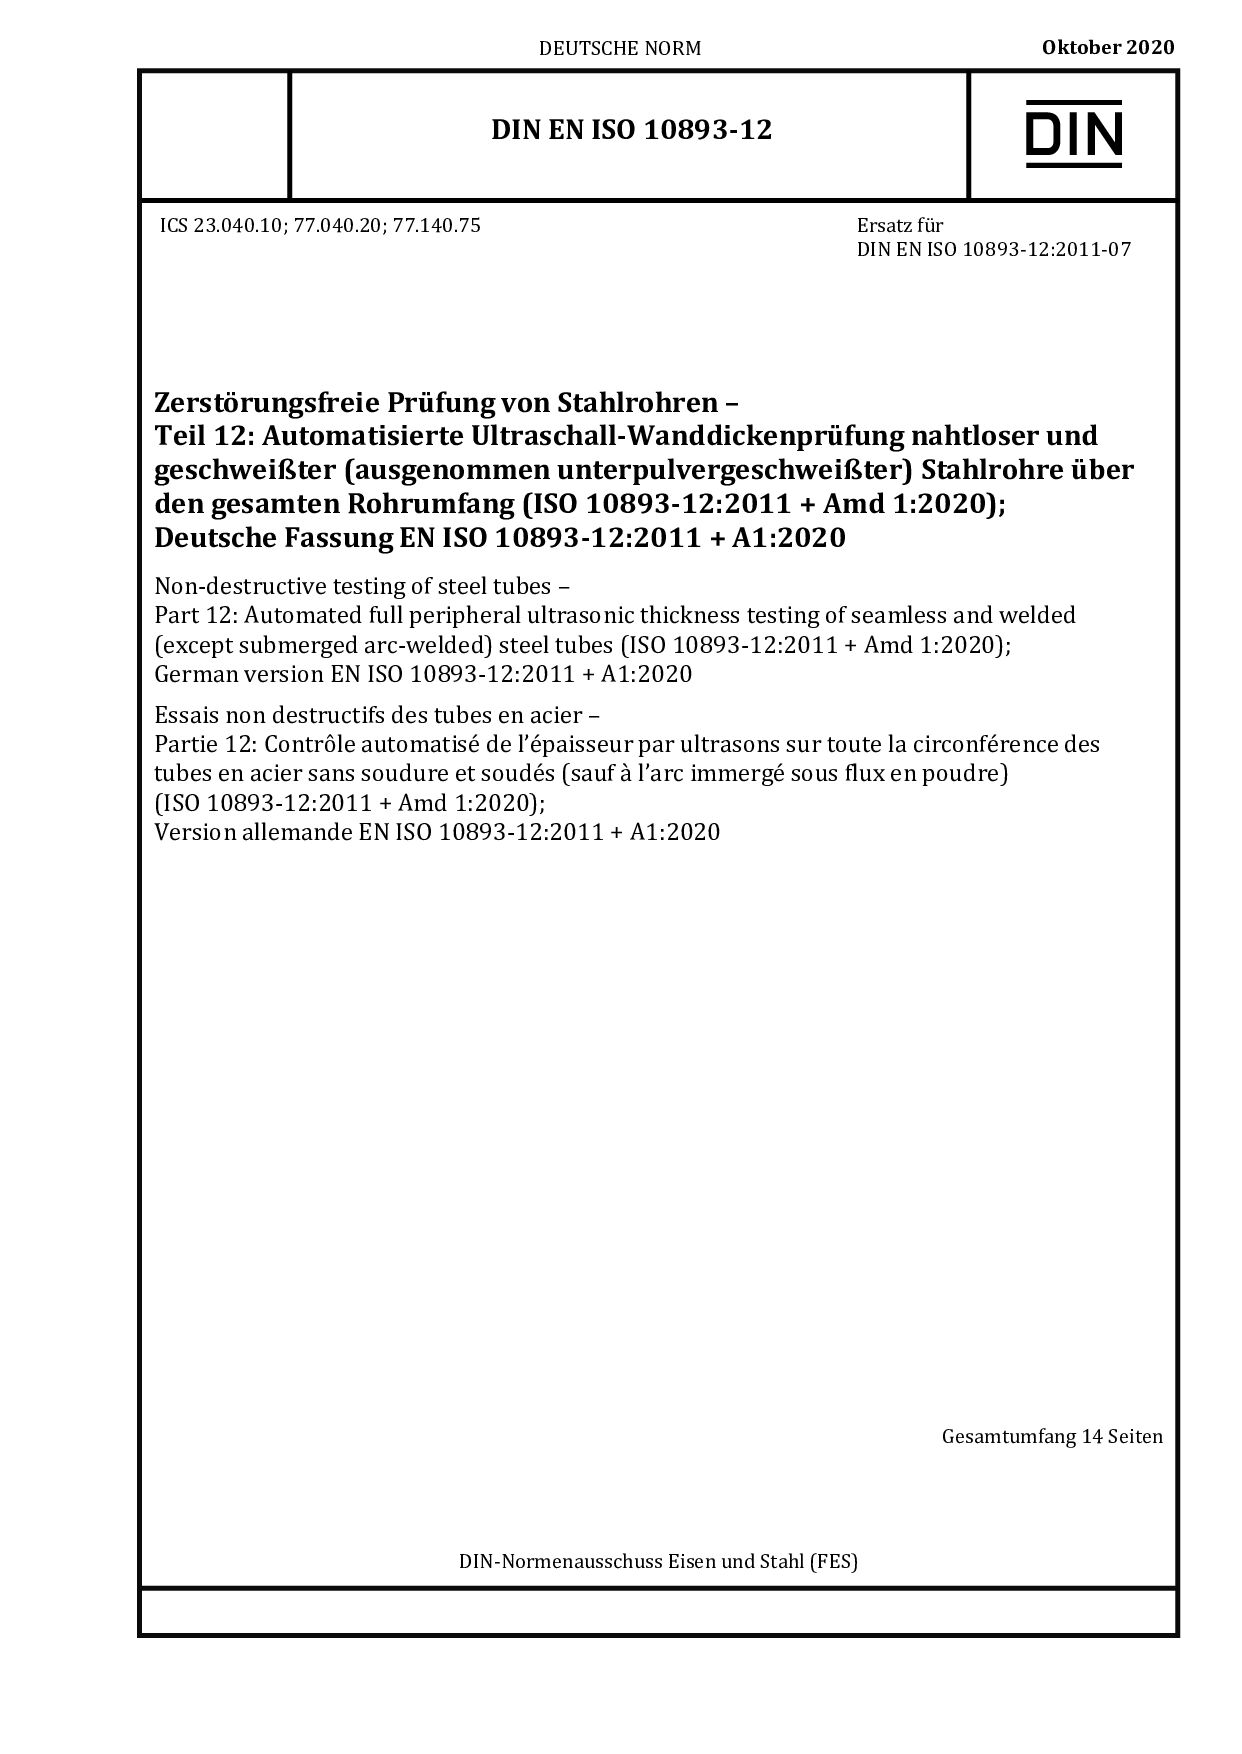 DIN EN ISO 10893-12:2020-10封面图